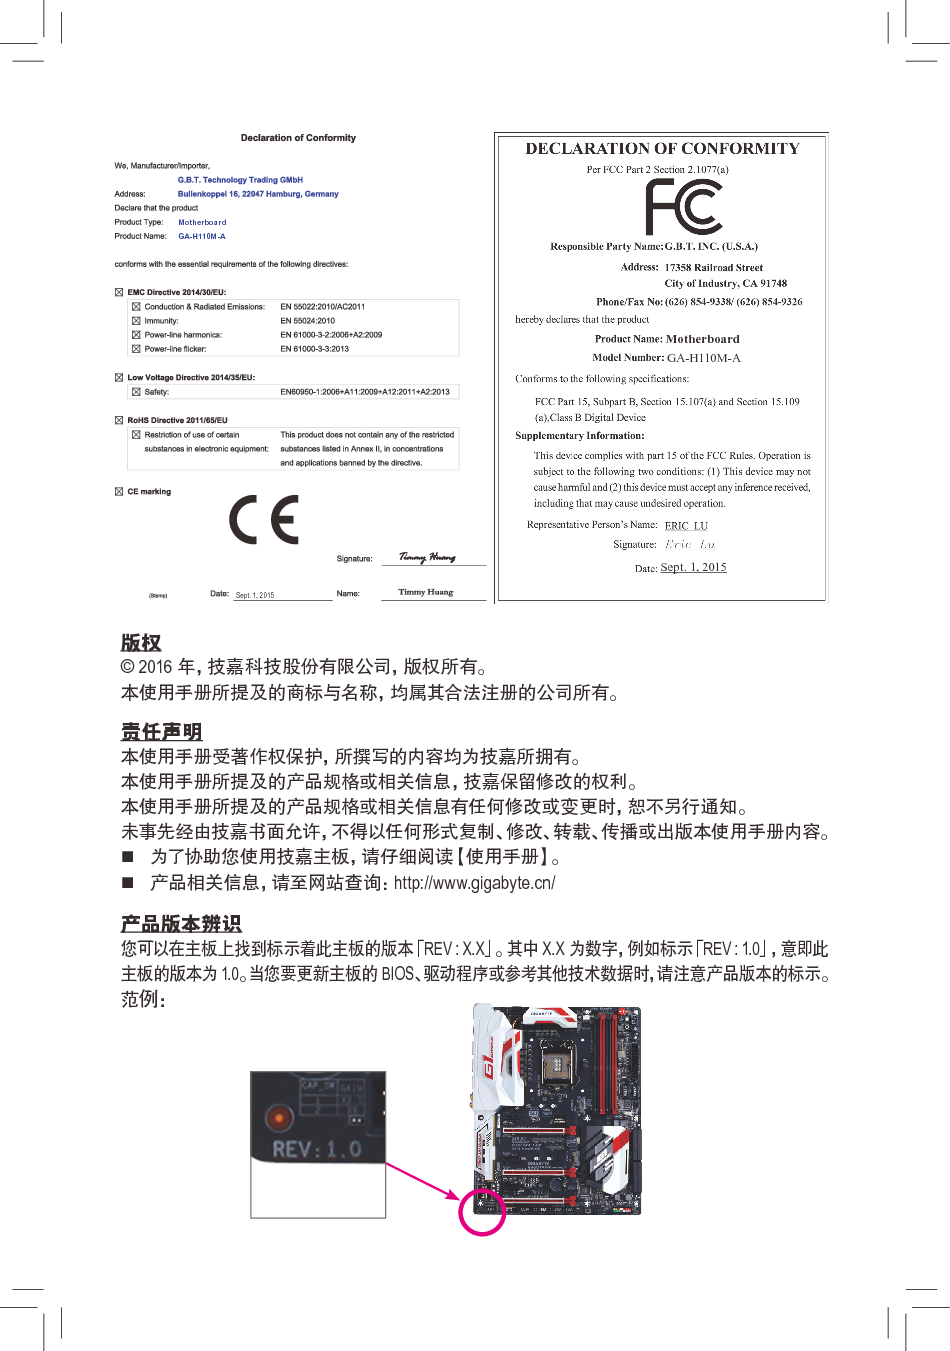 技嘉 Gigabyte GA-H110M-A 使用手册 第1页